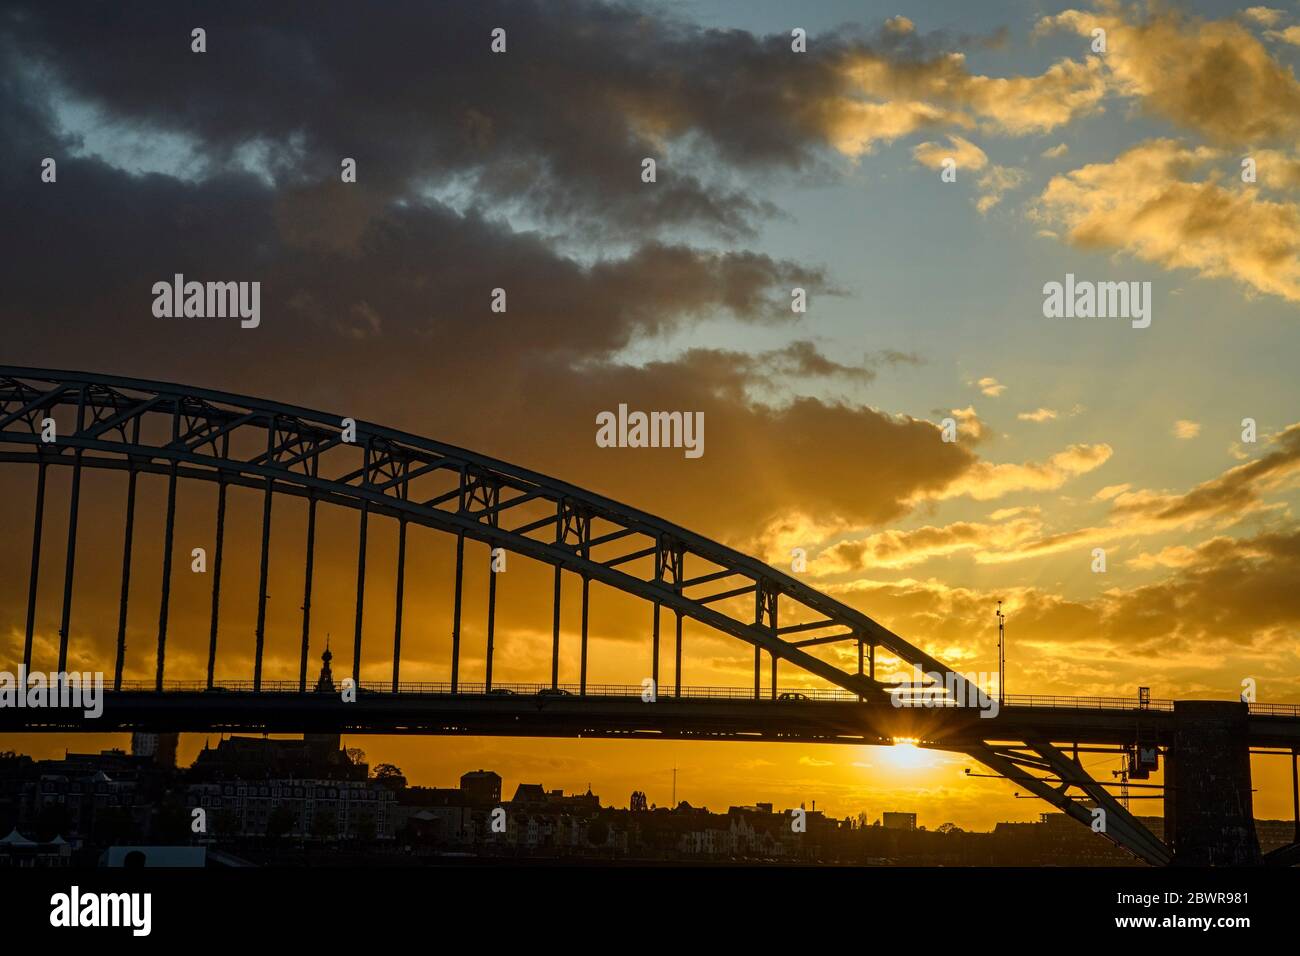 Waalbrug Bridge over the Waal River at sunset, Nijmegen, Gelderland, Netherlands. Stock Photo